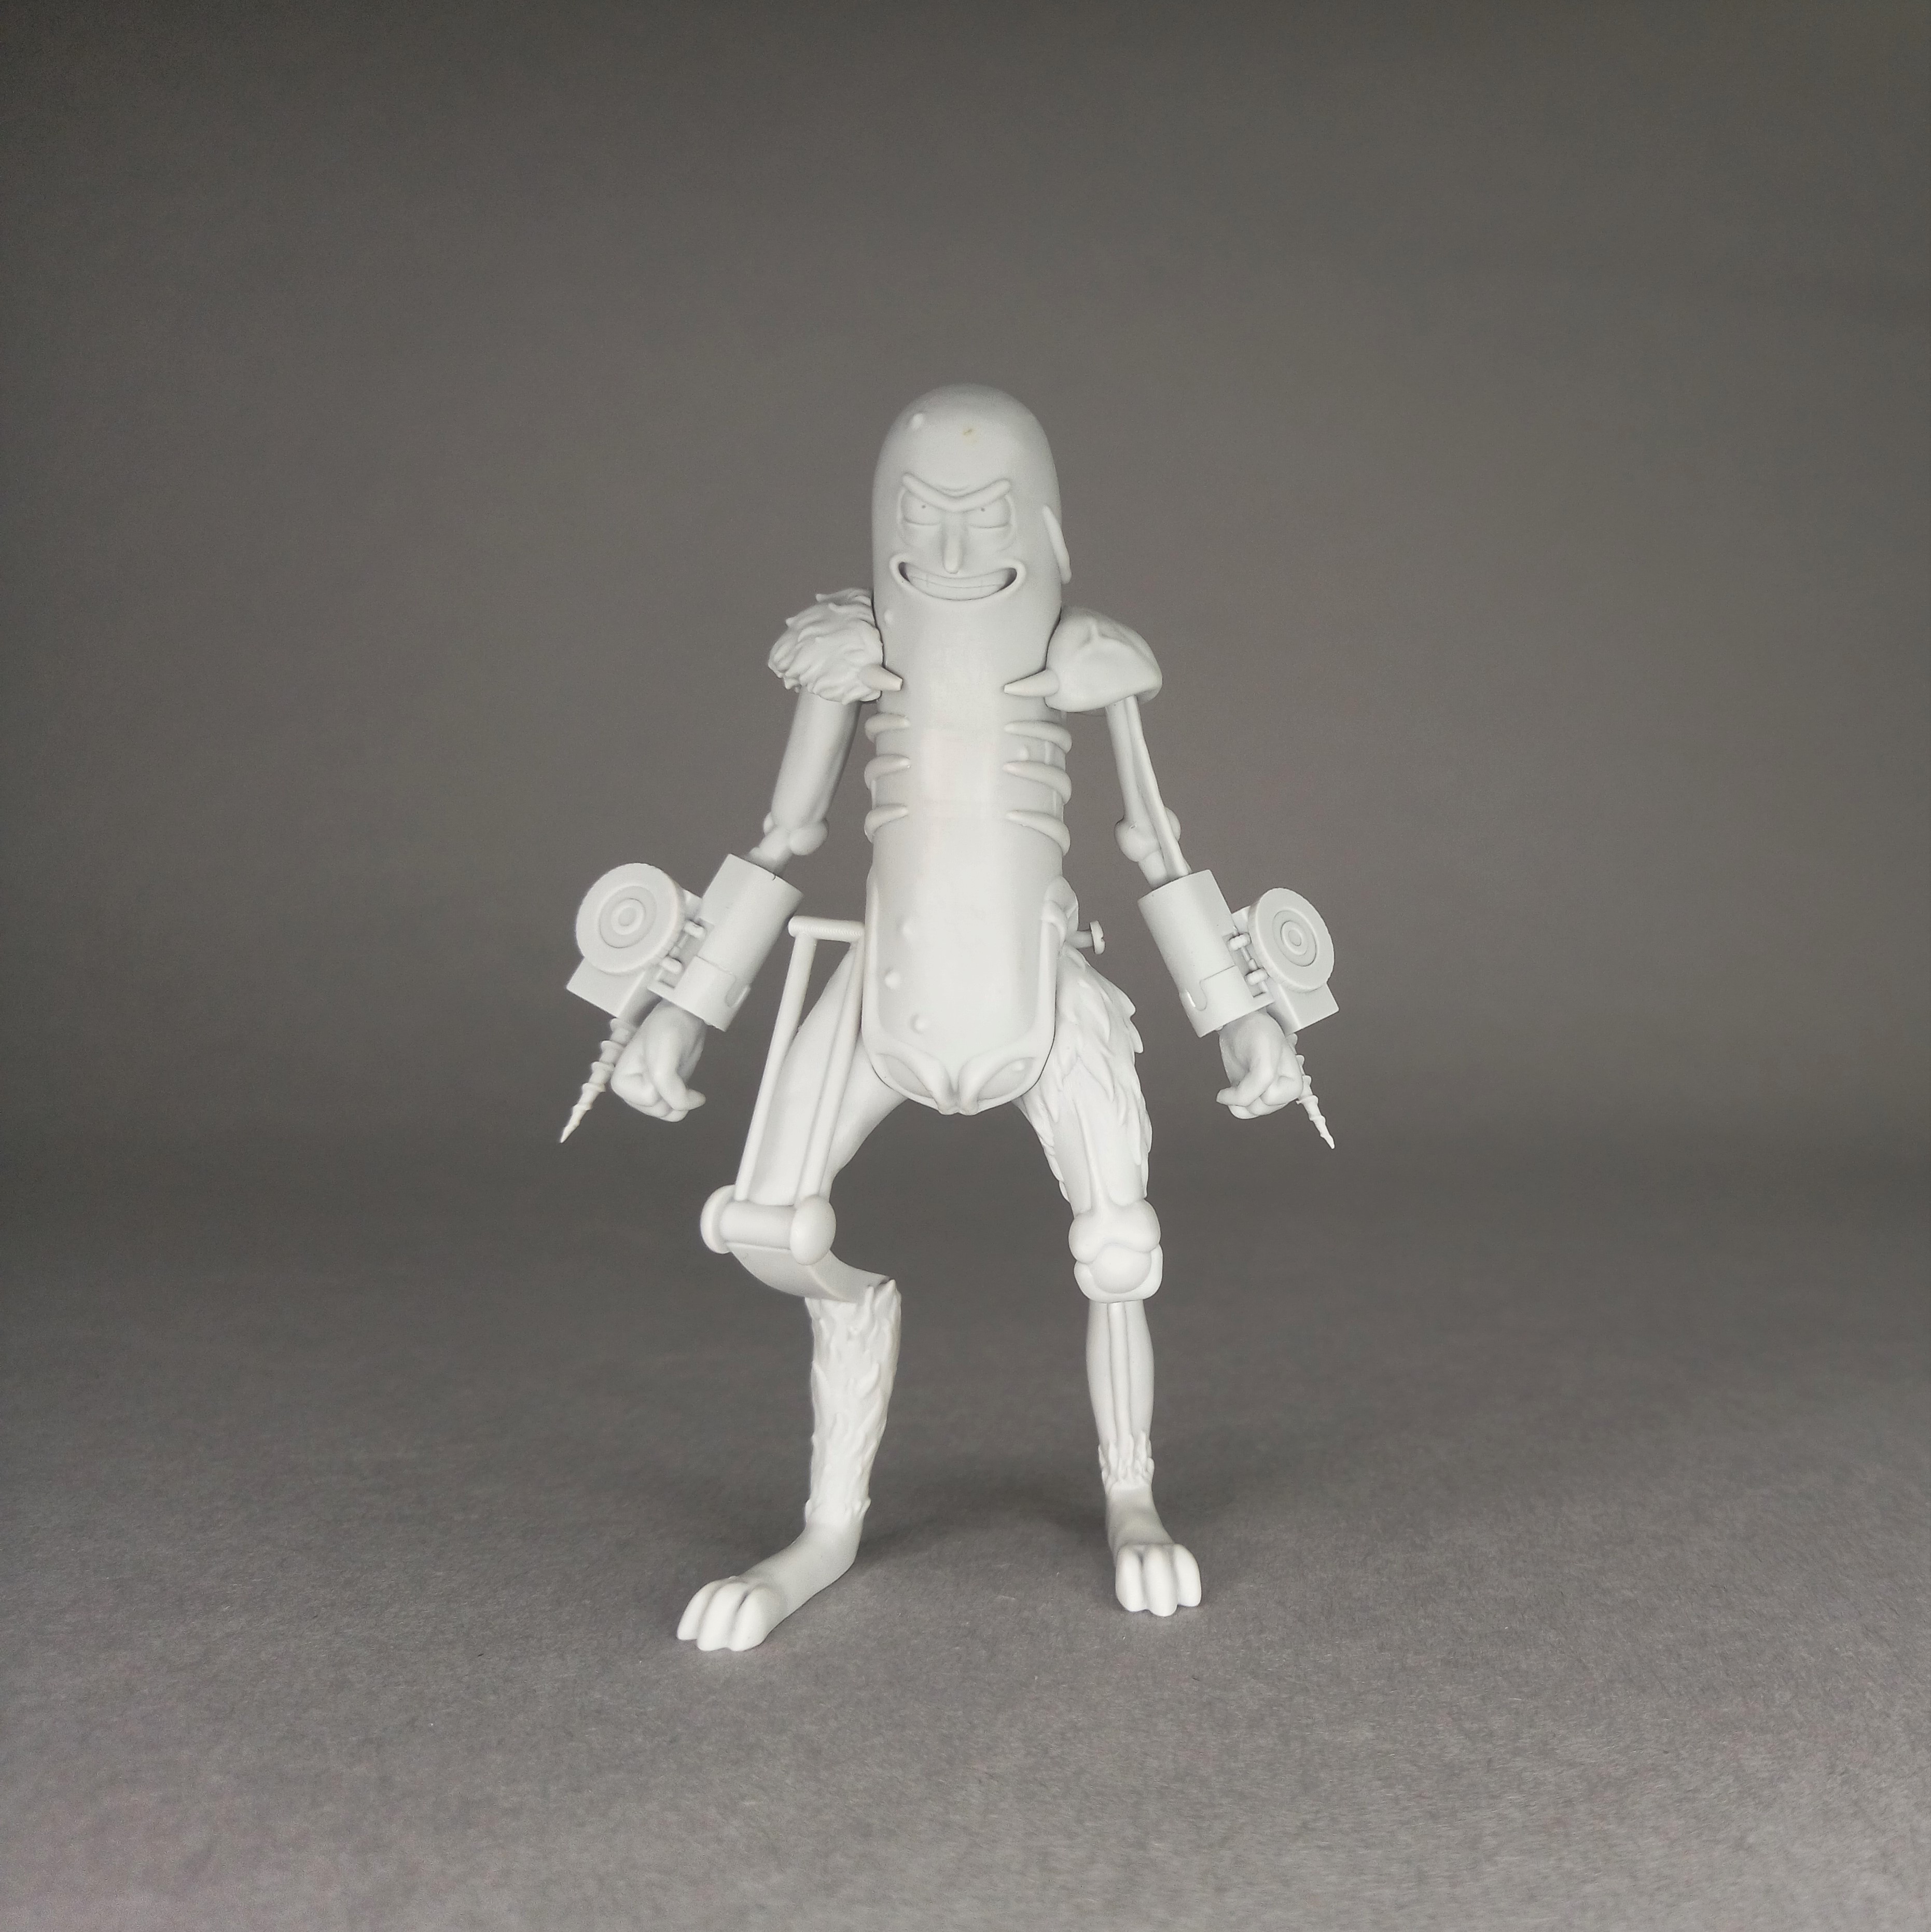 70-001 Figure "Огурчик Рик", Pose 1. 70mm